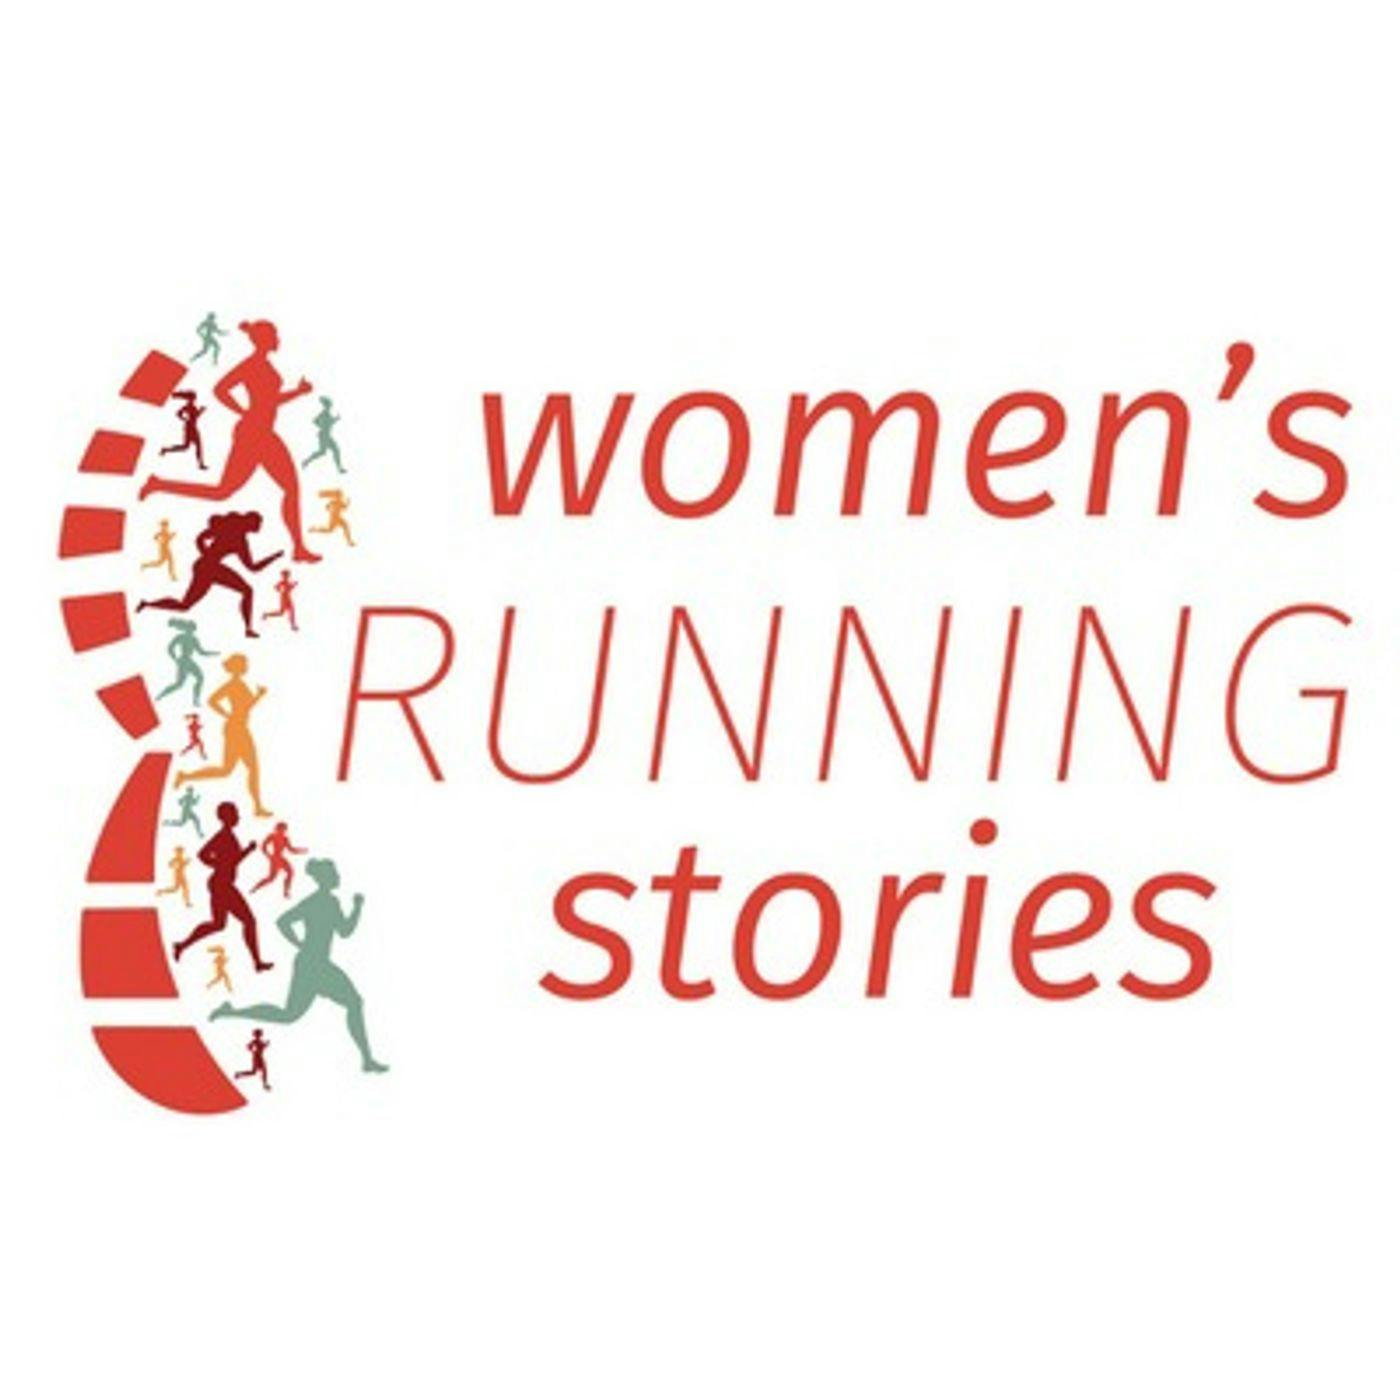 Women's Running Stories